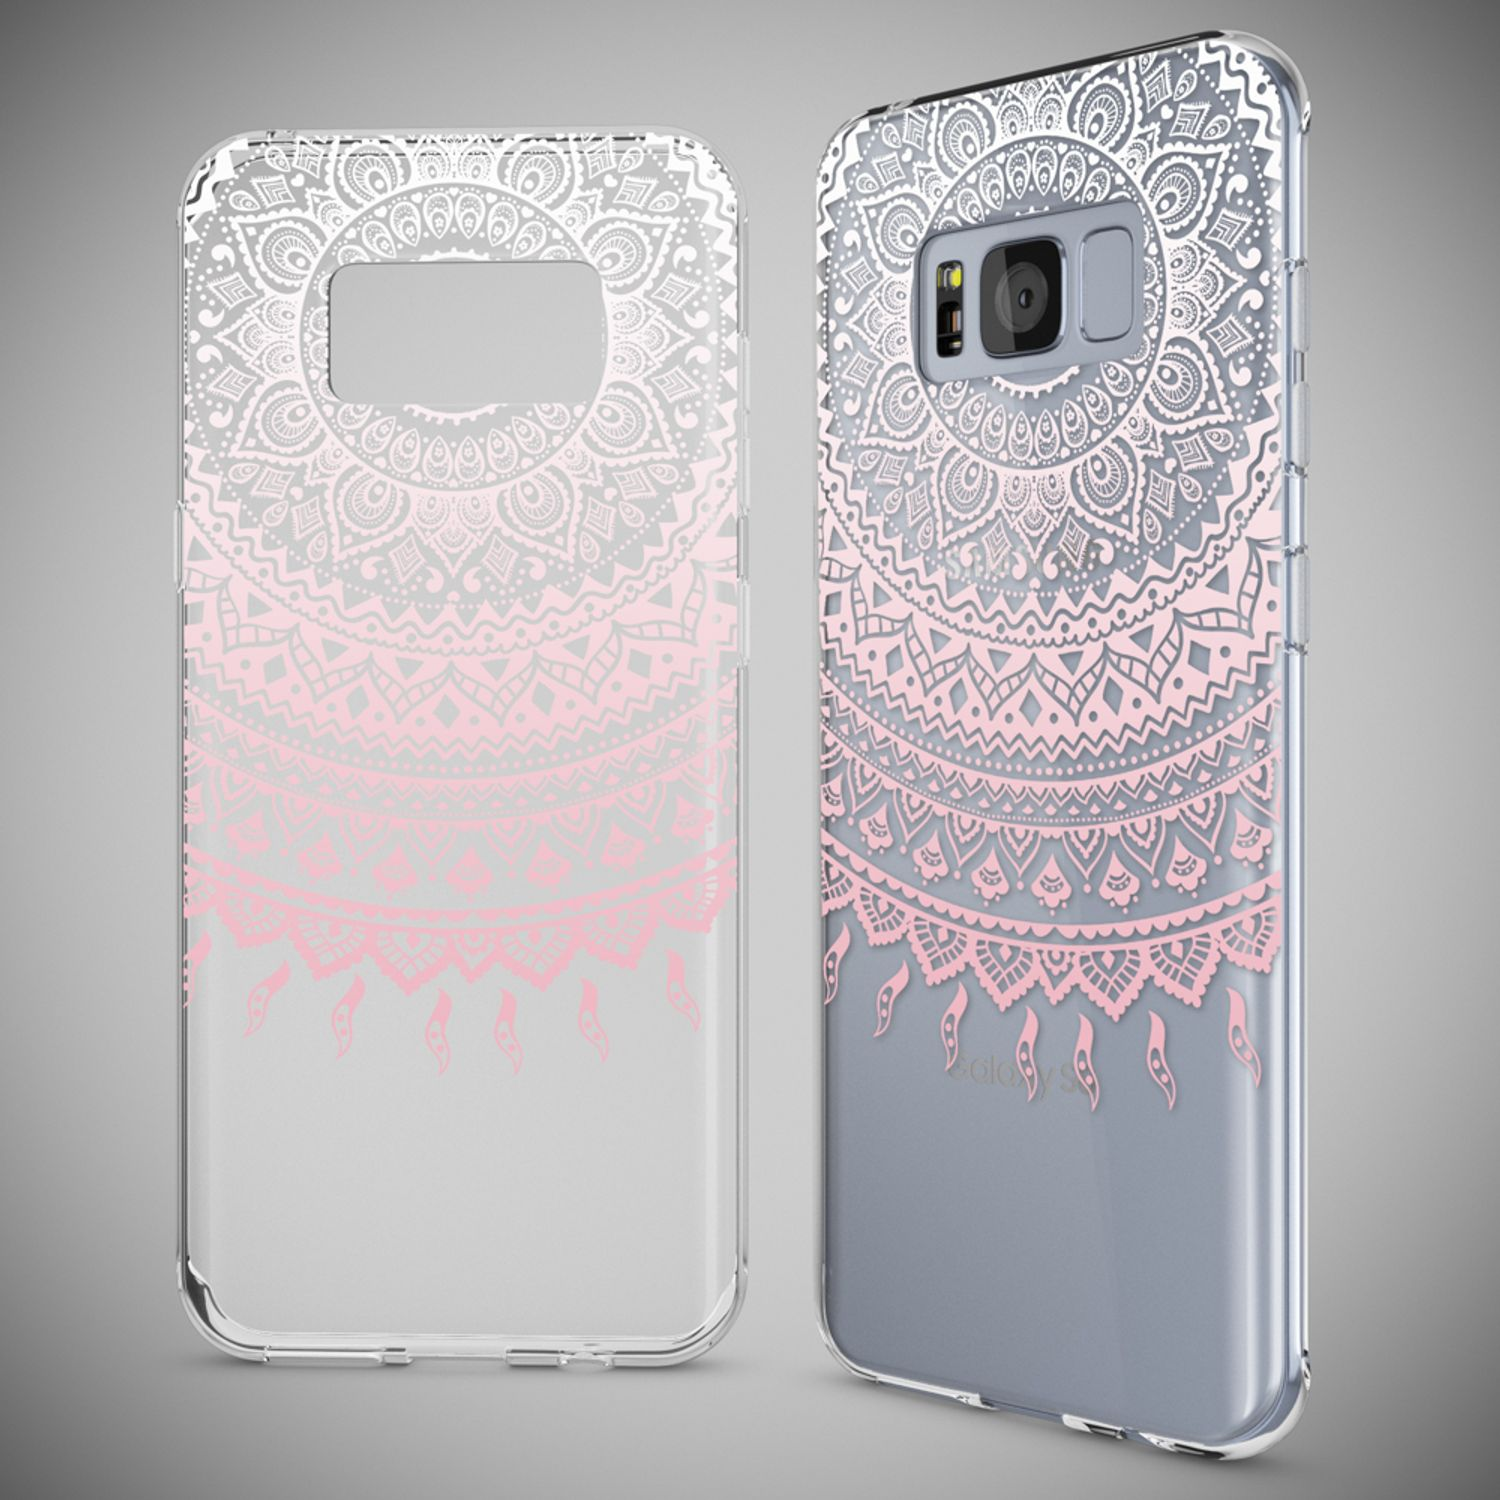 Samsung, Silikon Motiv Mehrfarbig NALIA Hülle, Galaxy Backcover, S8,